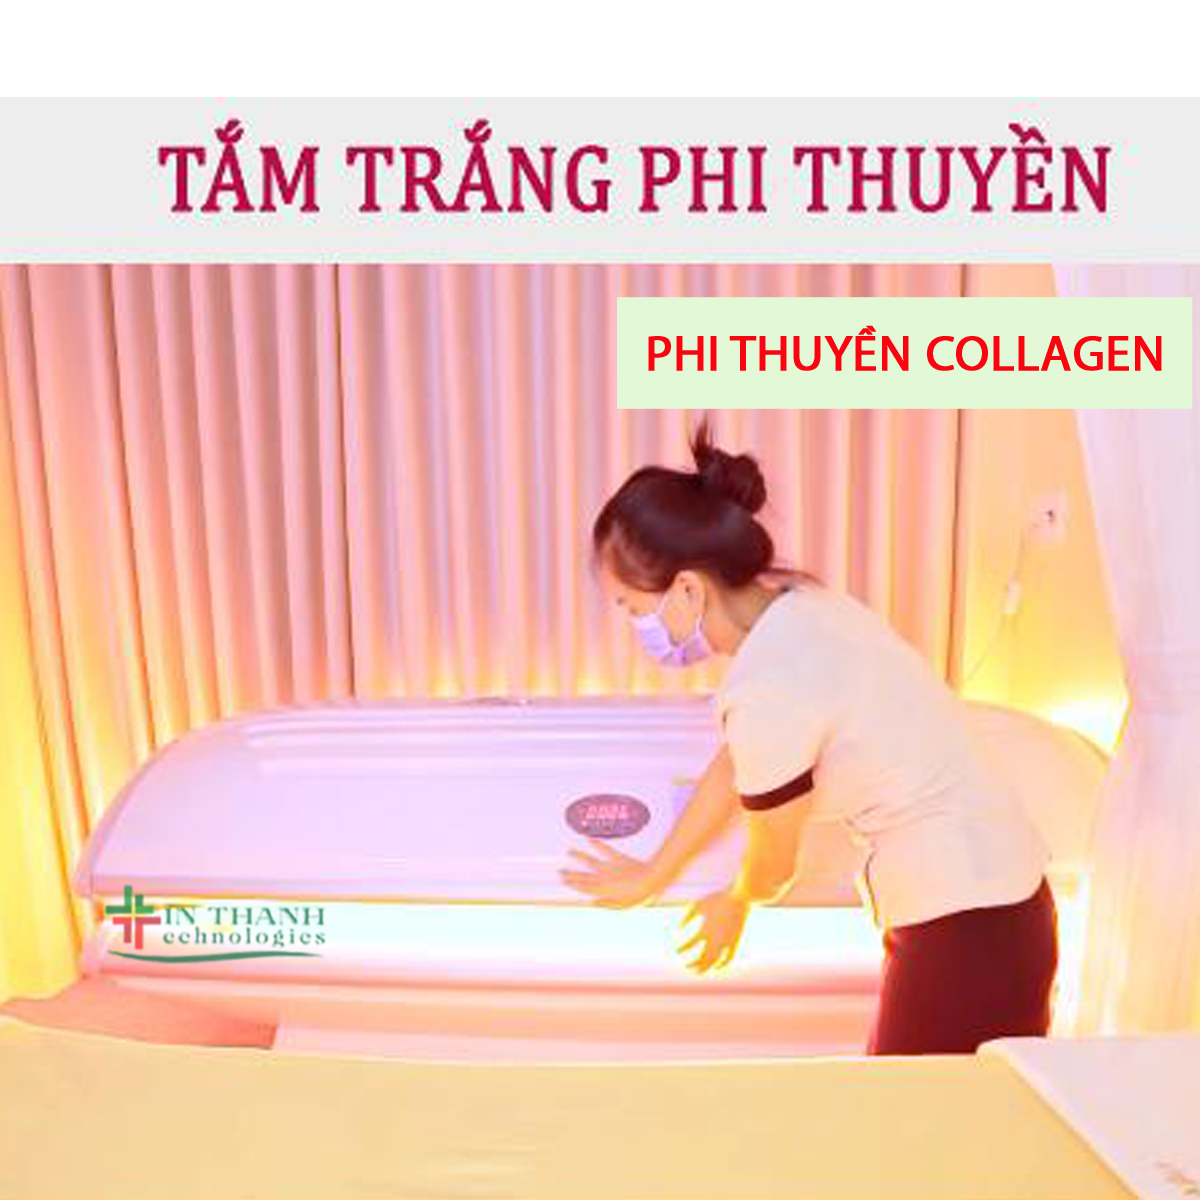 phi-thuyen-collagen-1.1.jpg (550 KB)